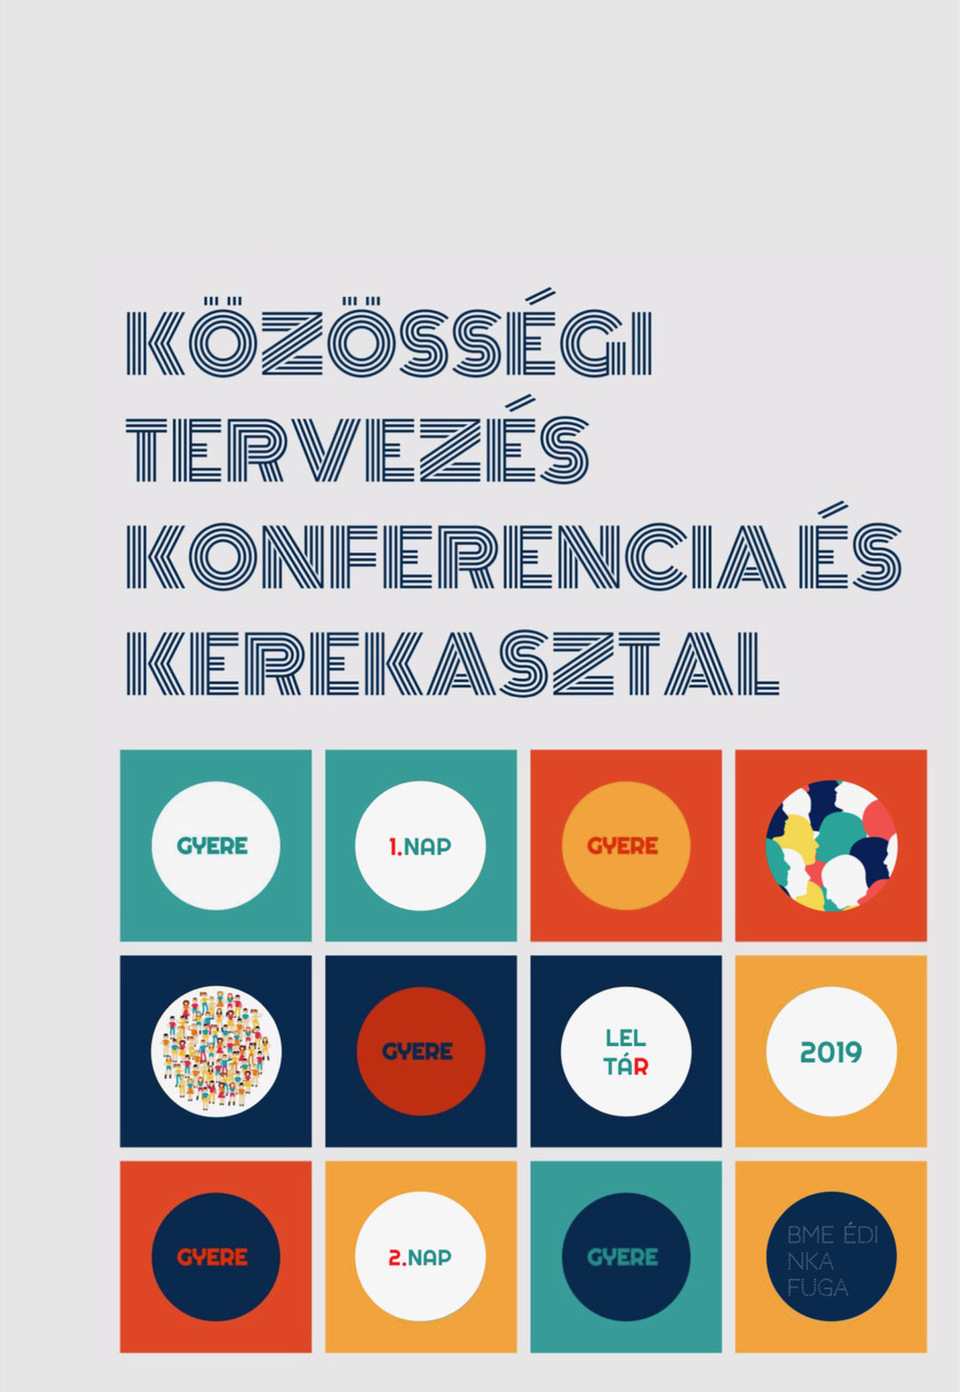 Közösségi tervezés konferencia és kerekasztal beszélgetés című könyv címlapja– szervezők: Borsos Melinda és Dimitrijevic Tijana – terv: Simonovits Erika